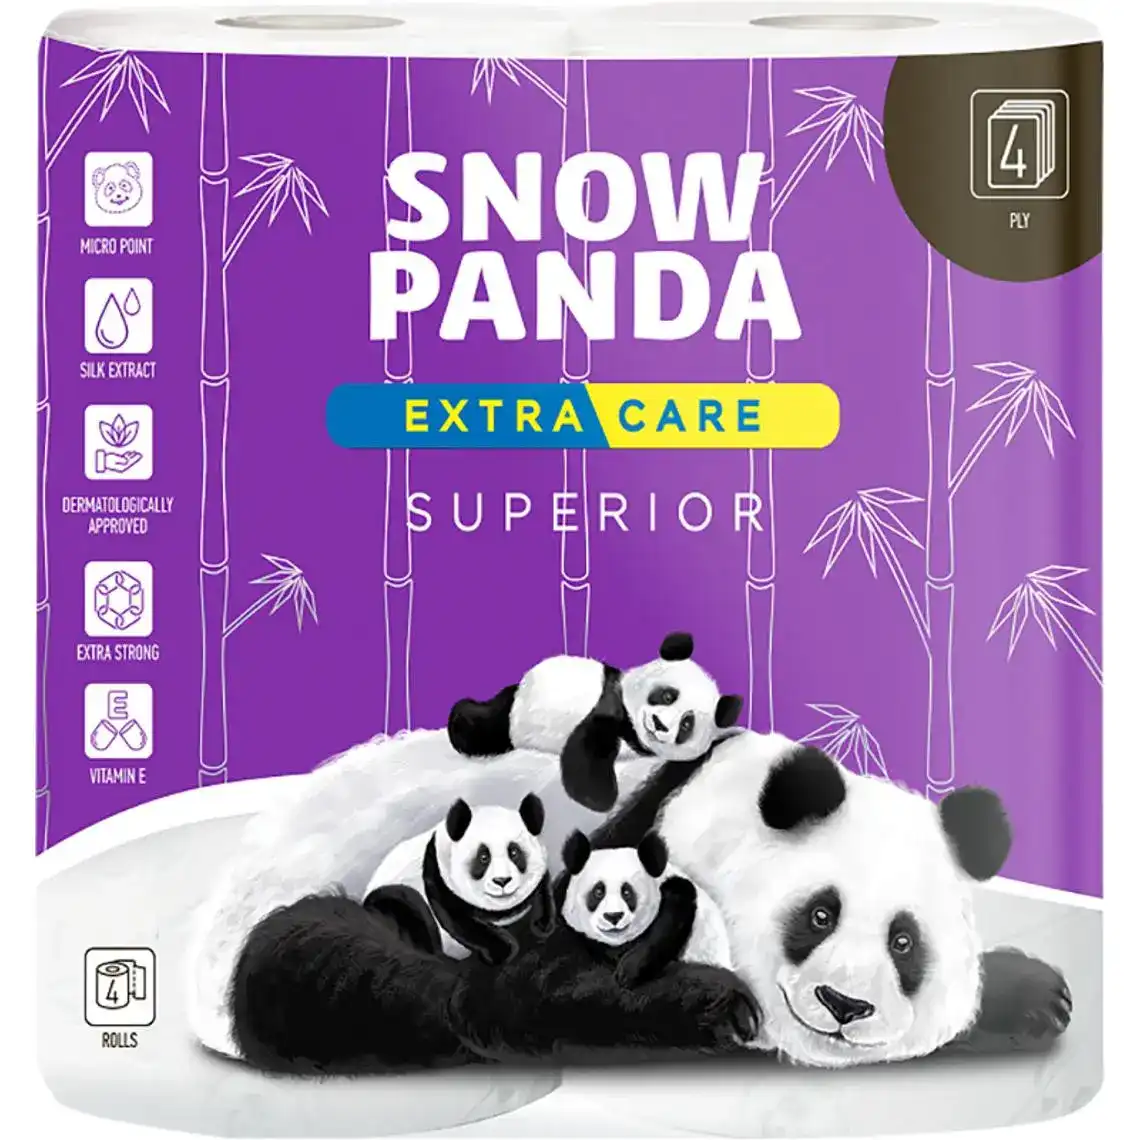 Бумага туалетная Снежная панда  Extra care Superior 4-слойная 4 шт